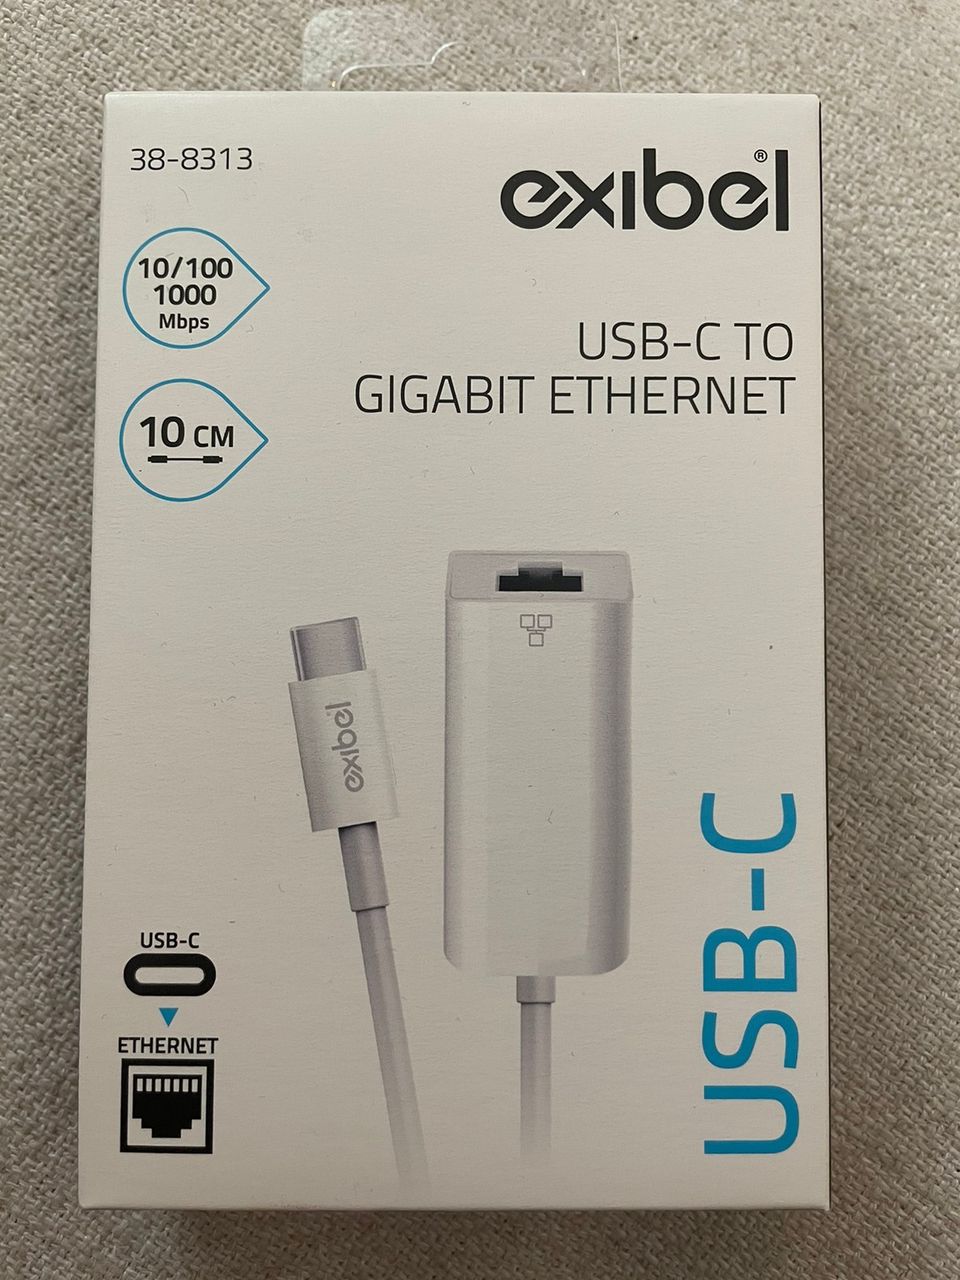 Exibel USB-C gigabit ethernet